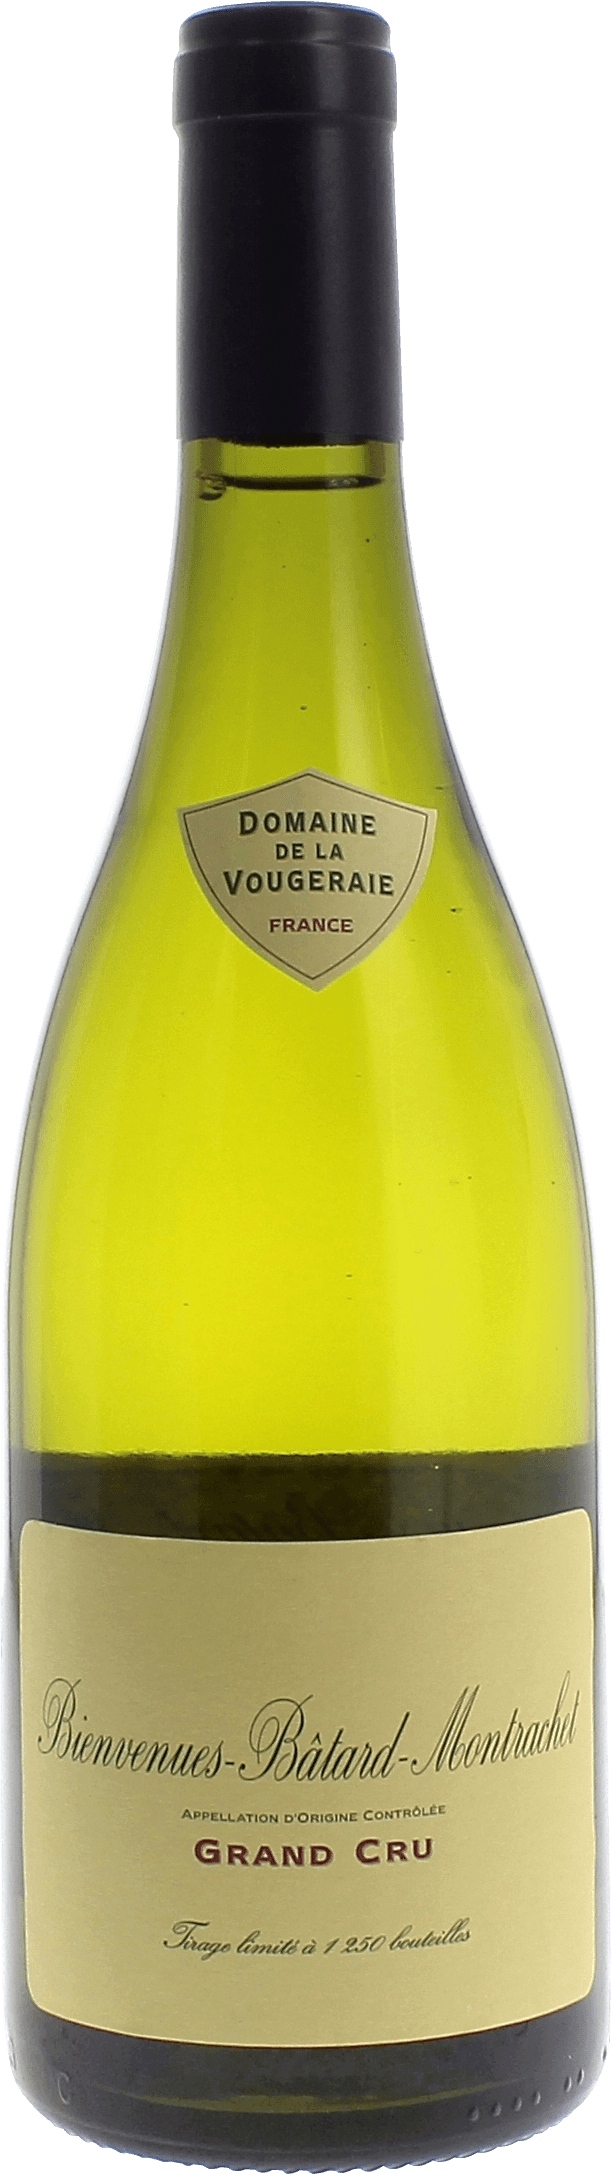 Bienvenue batard montrachet grand cru 2016 Domaine VOUGERAIE, Bourgogne blanc